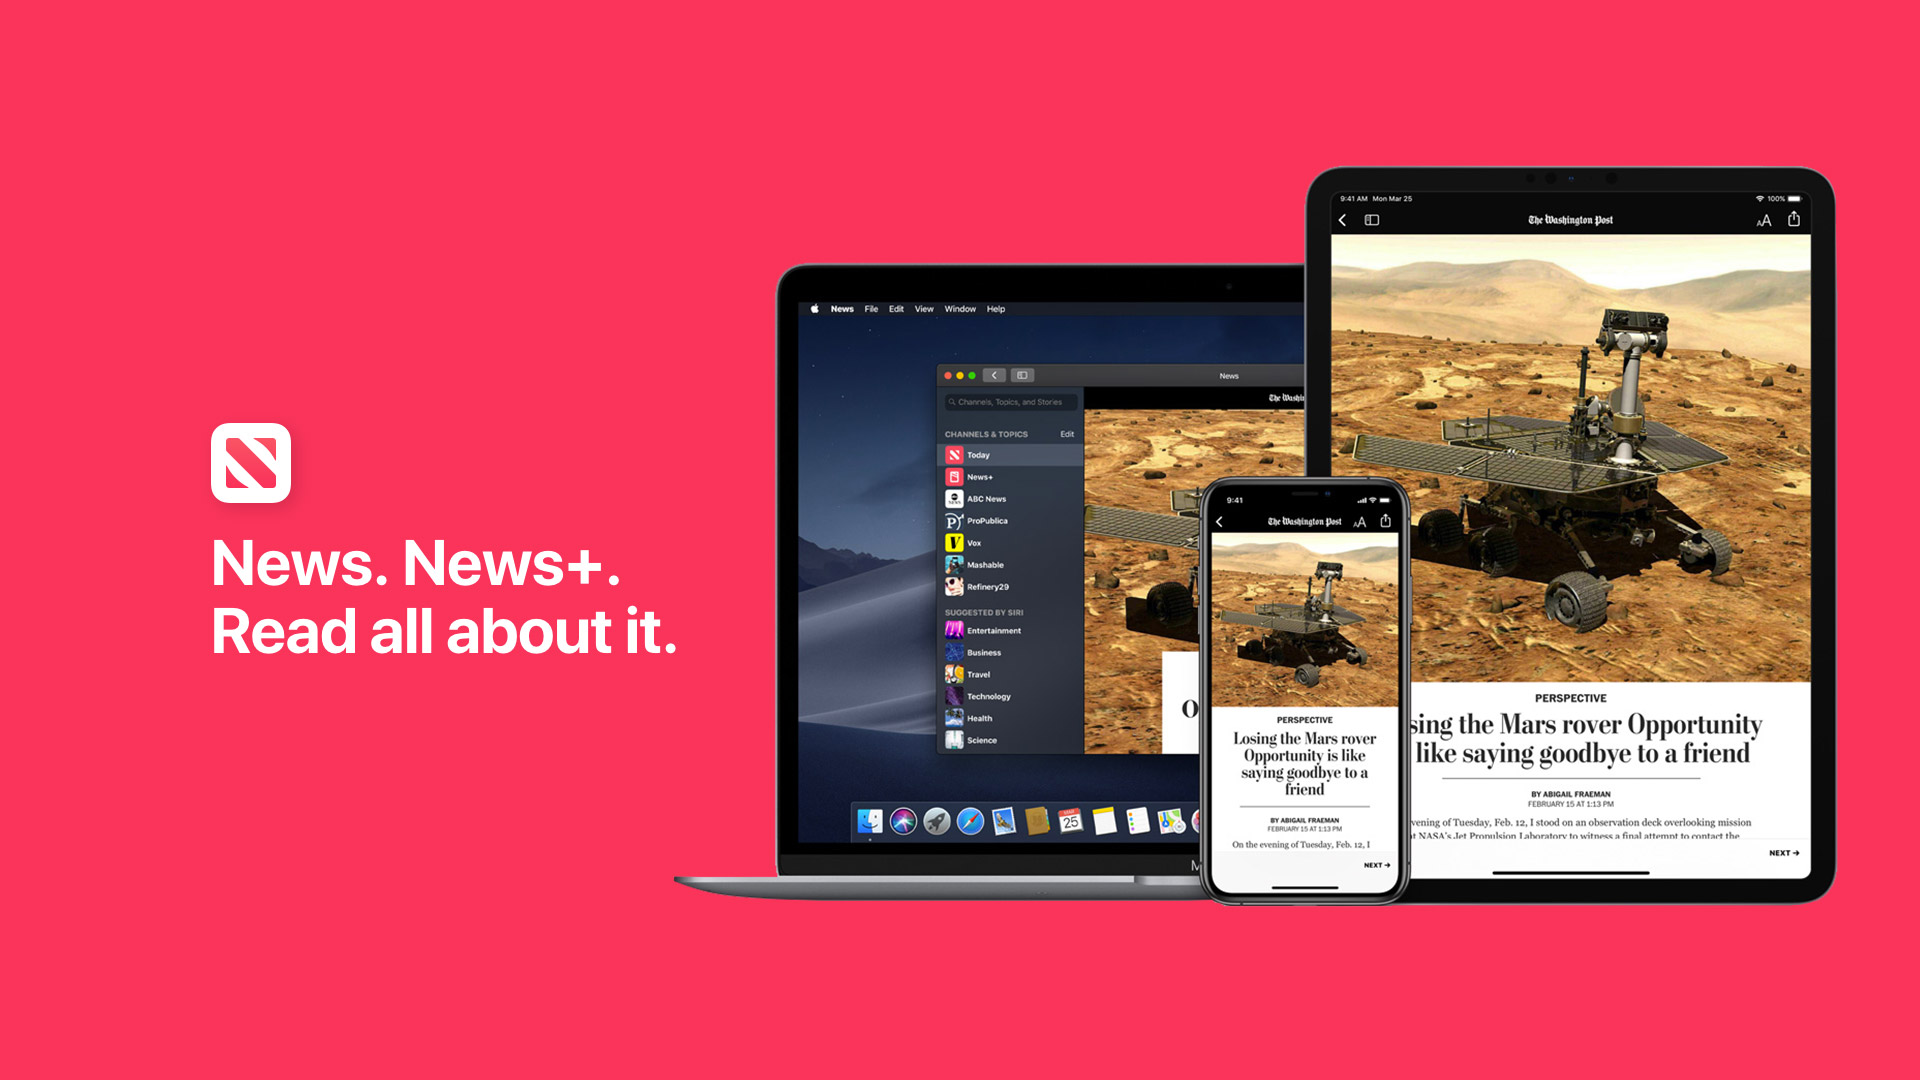 Kulang ang Apple News ng “+”: Mga Publisher at Gumagamit na Reklamo Tungkol sa Mga bug at Glitches